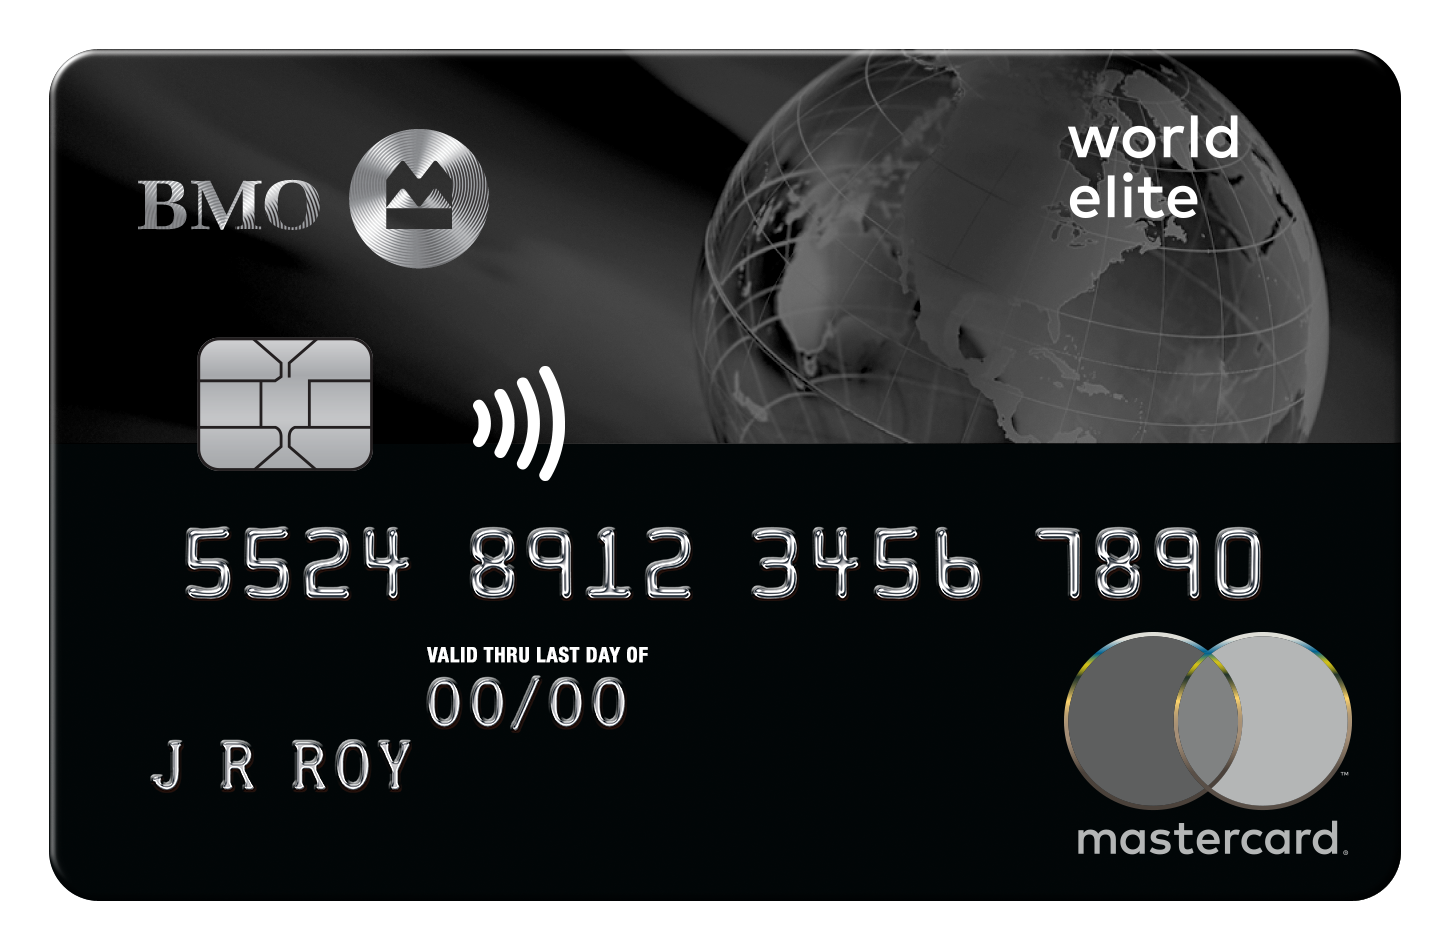 bmo world elite mastercard travel insurance over 65